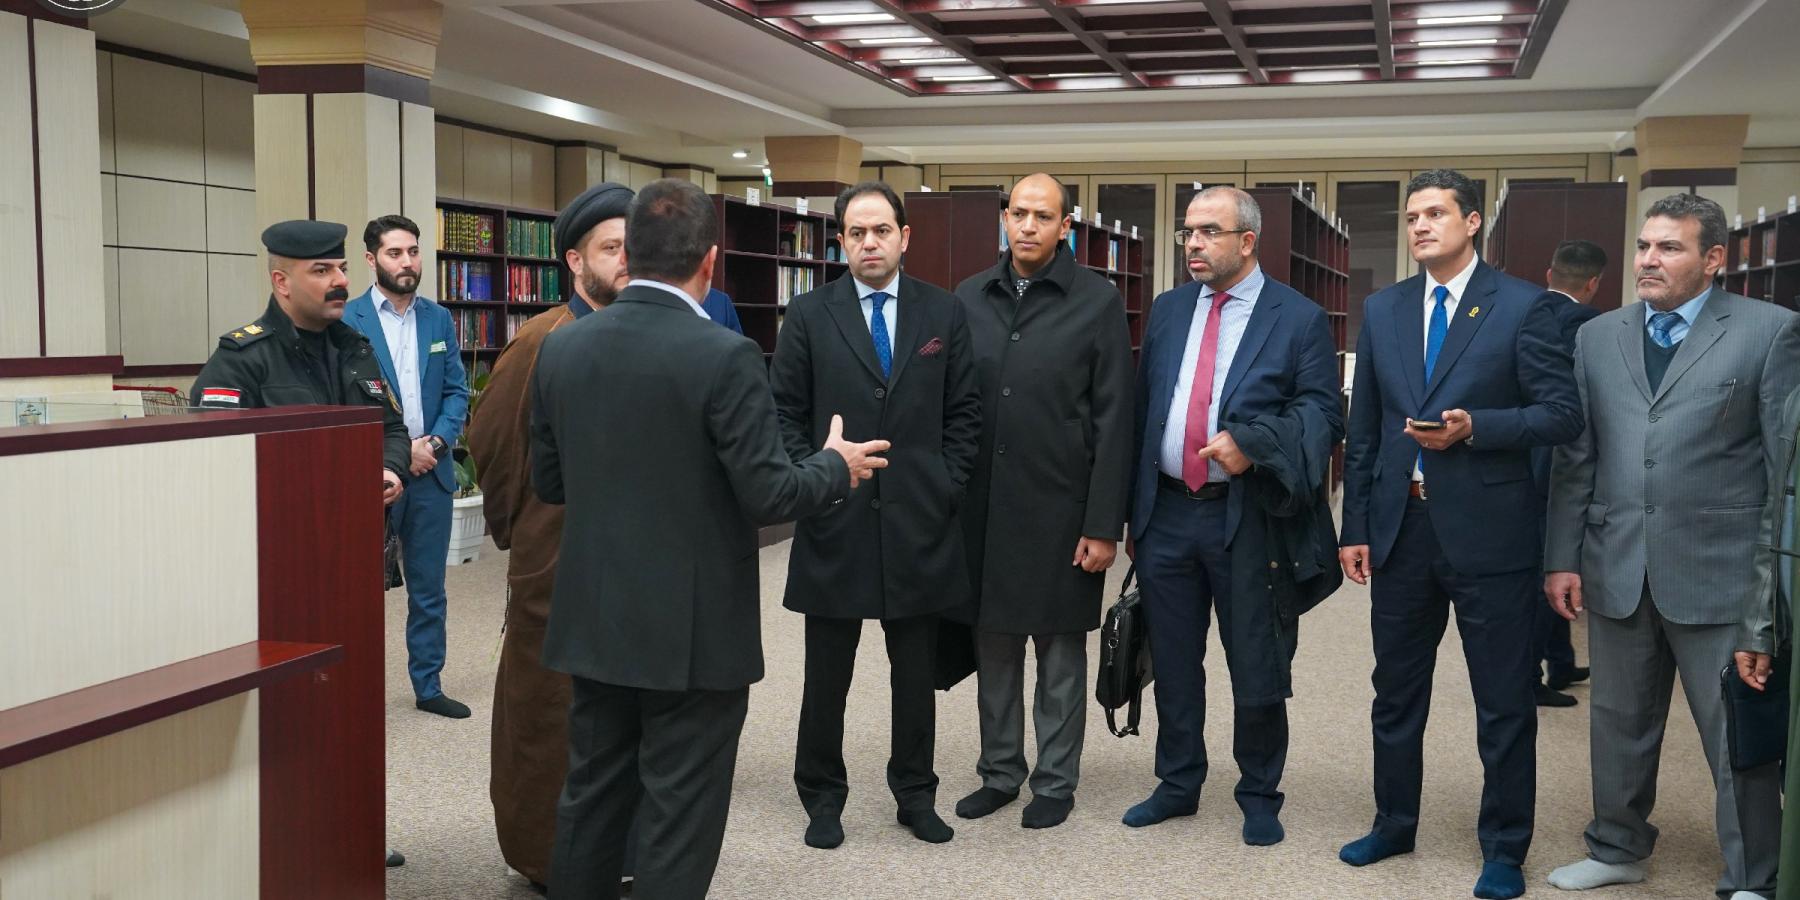 وفد مصري يزور مكتبة الروضة الحيدرية